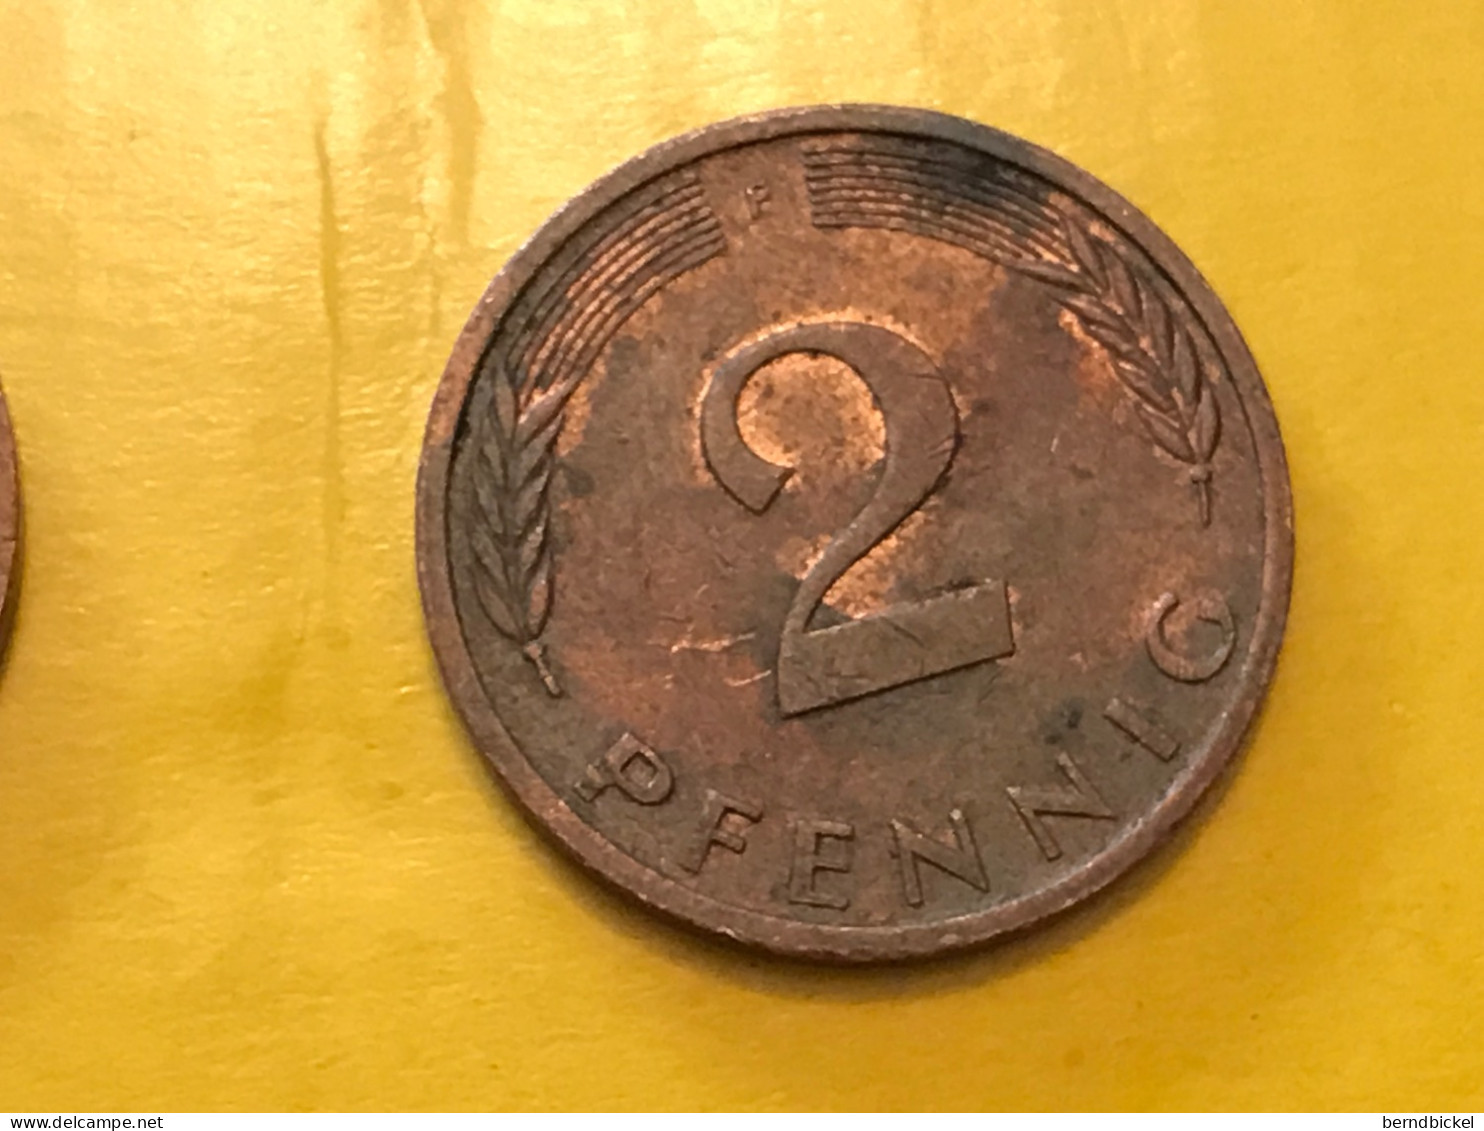 Münze Münzen Umlaufmünze Deutschland BRD 2 Pfennig 1980 Münzzeichen F - 2 Pfennig